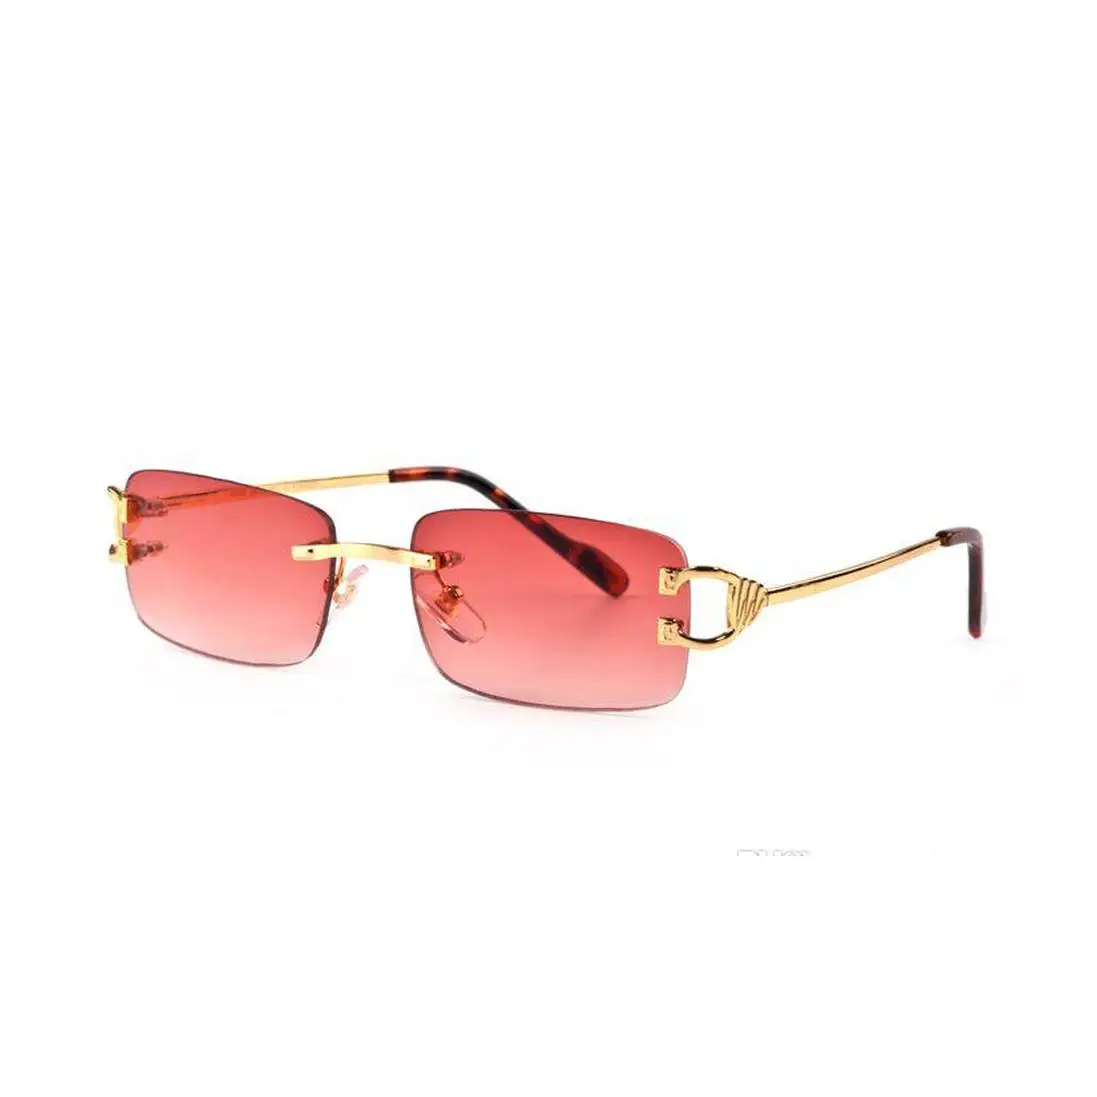 

Red Fashion Sport Sunglasses For Men 2020 Unisex Buffalo Horn Glasses Men Women Rimless Sun Glasses Silver Gold Metal Frame Eyew